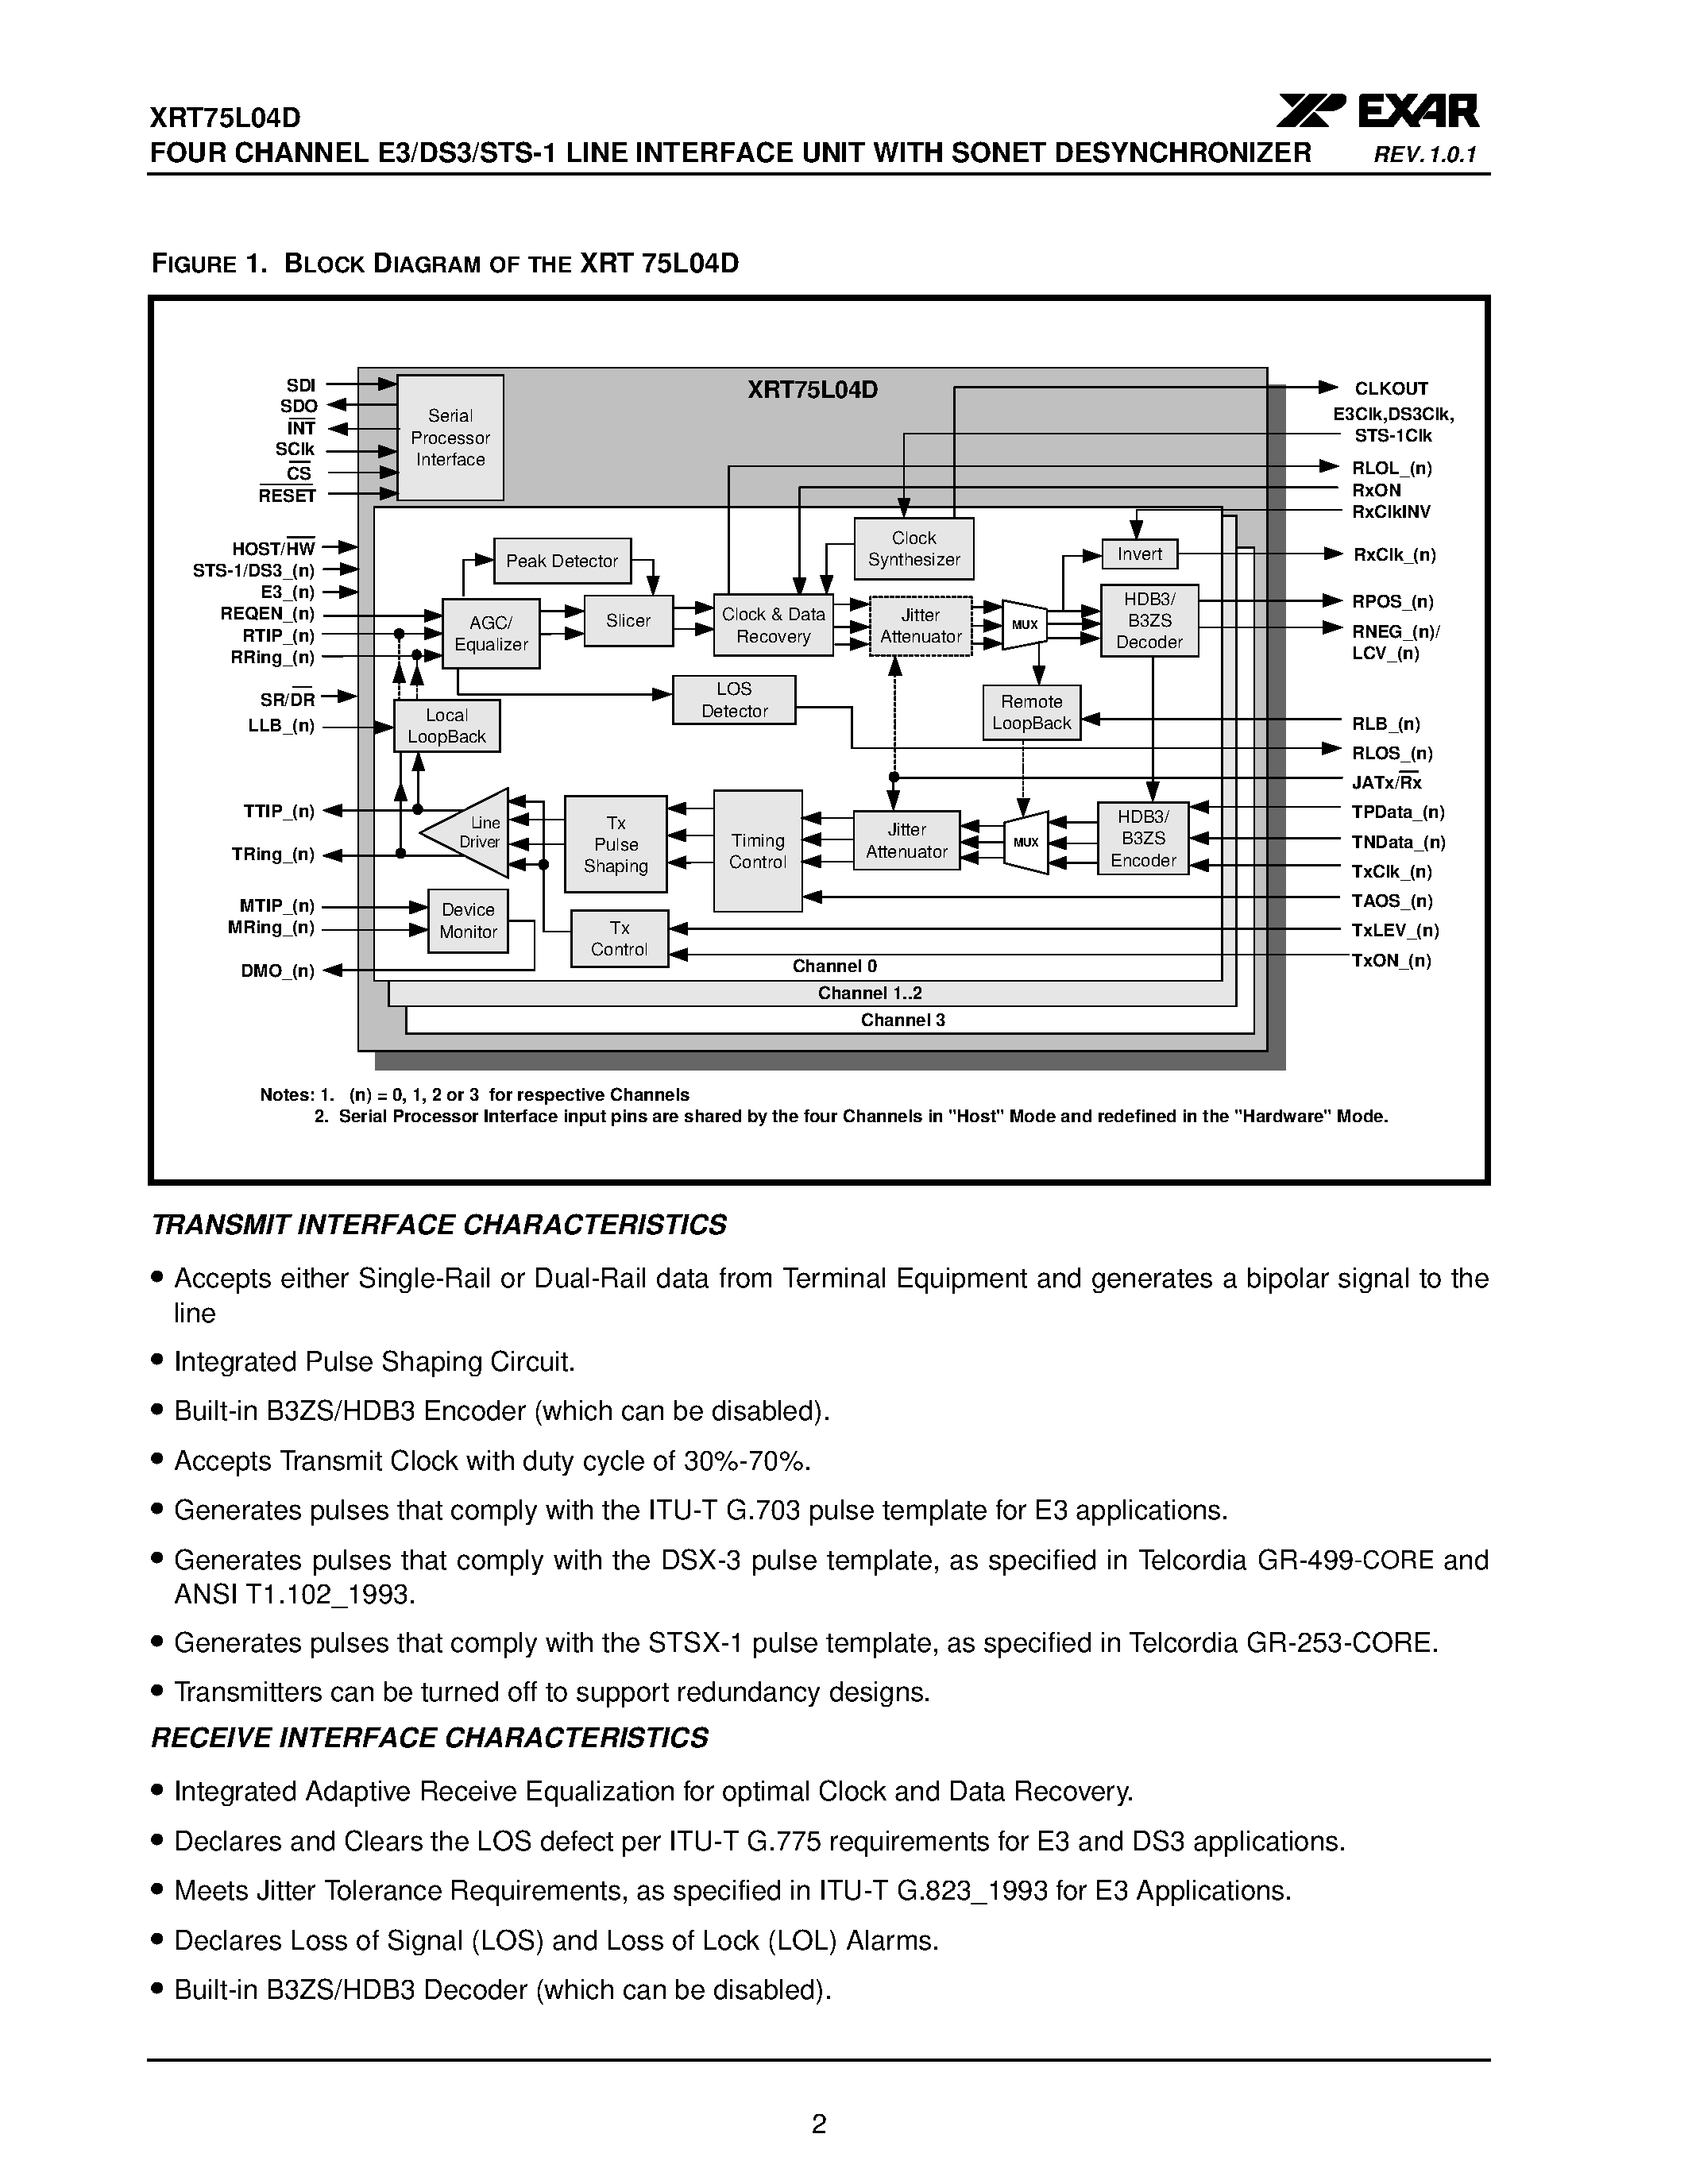 Datasheet XRT75L04D - FOUR CHANNEL E3/DS3/STS-1 LINE INTERFACE UNIT page 2